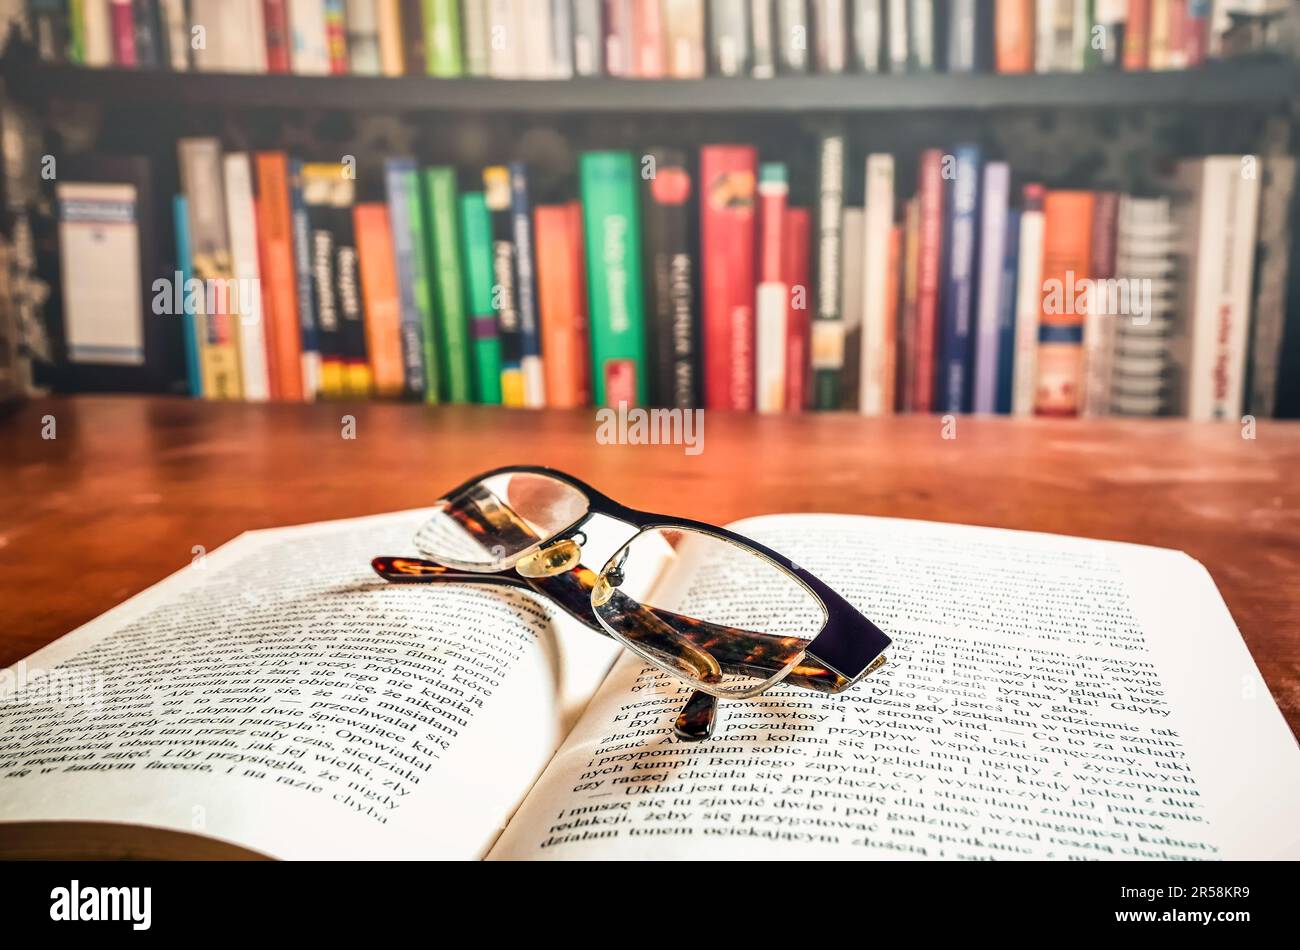 Ouvrez un livre et des lunettes avec des livres sur une étagère à l'arrière-plan. Faible profondeur de champ. Banque D'Images